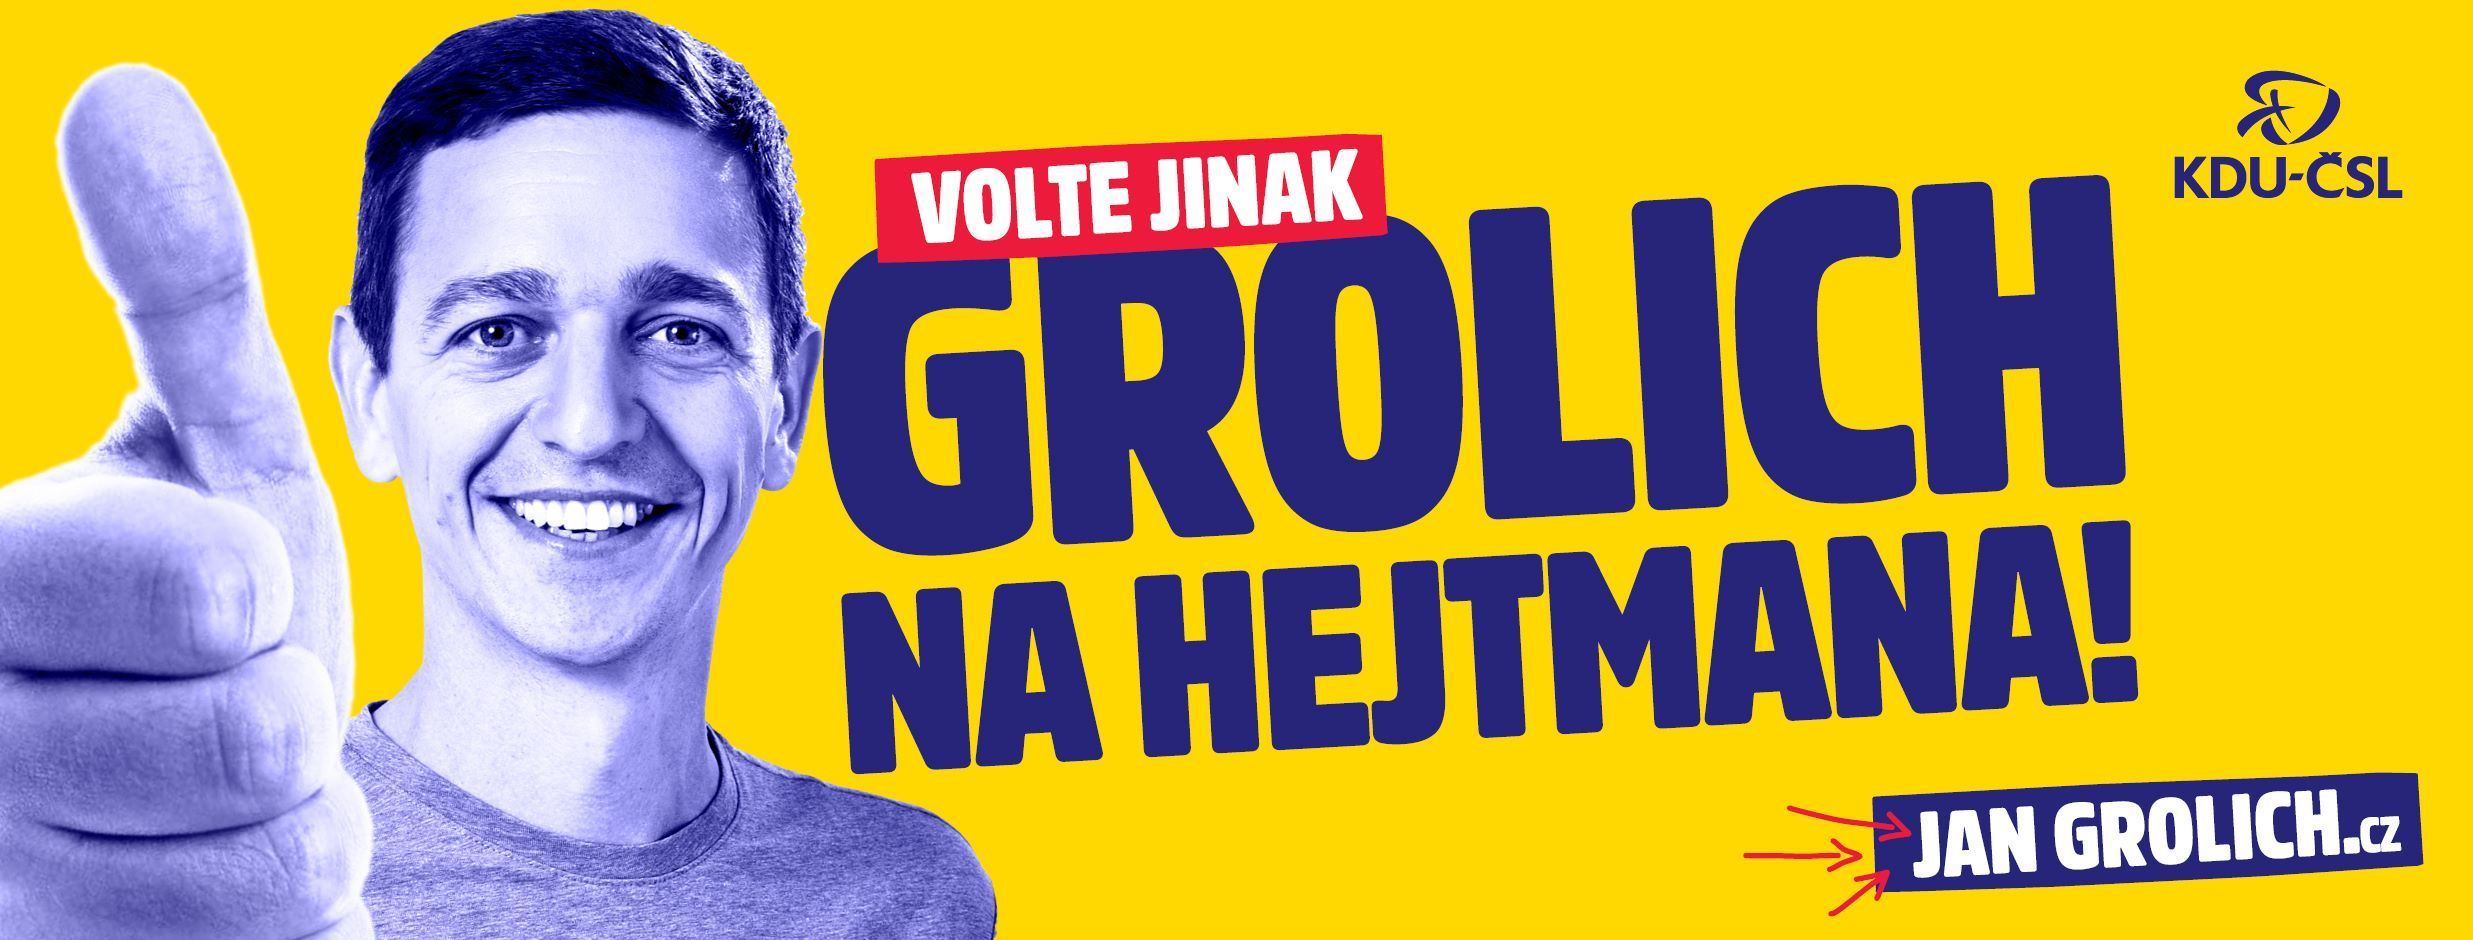 Předvolební banner lidoveckého politika Jana Grolicha